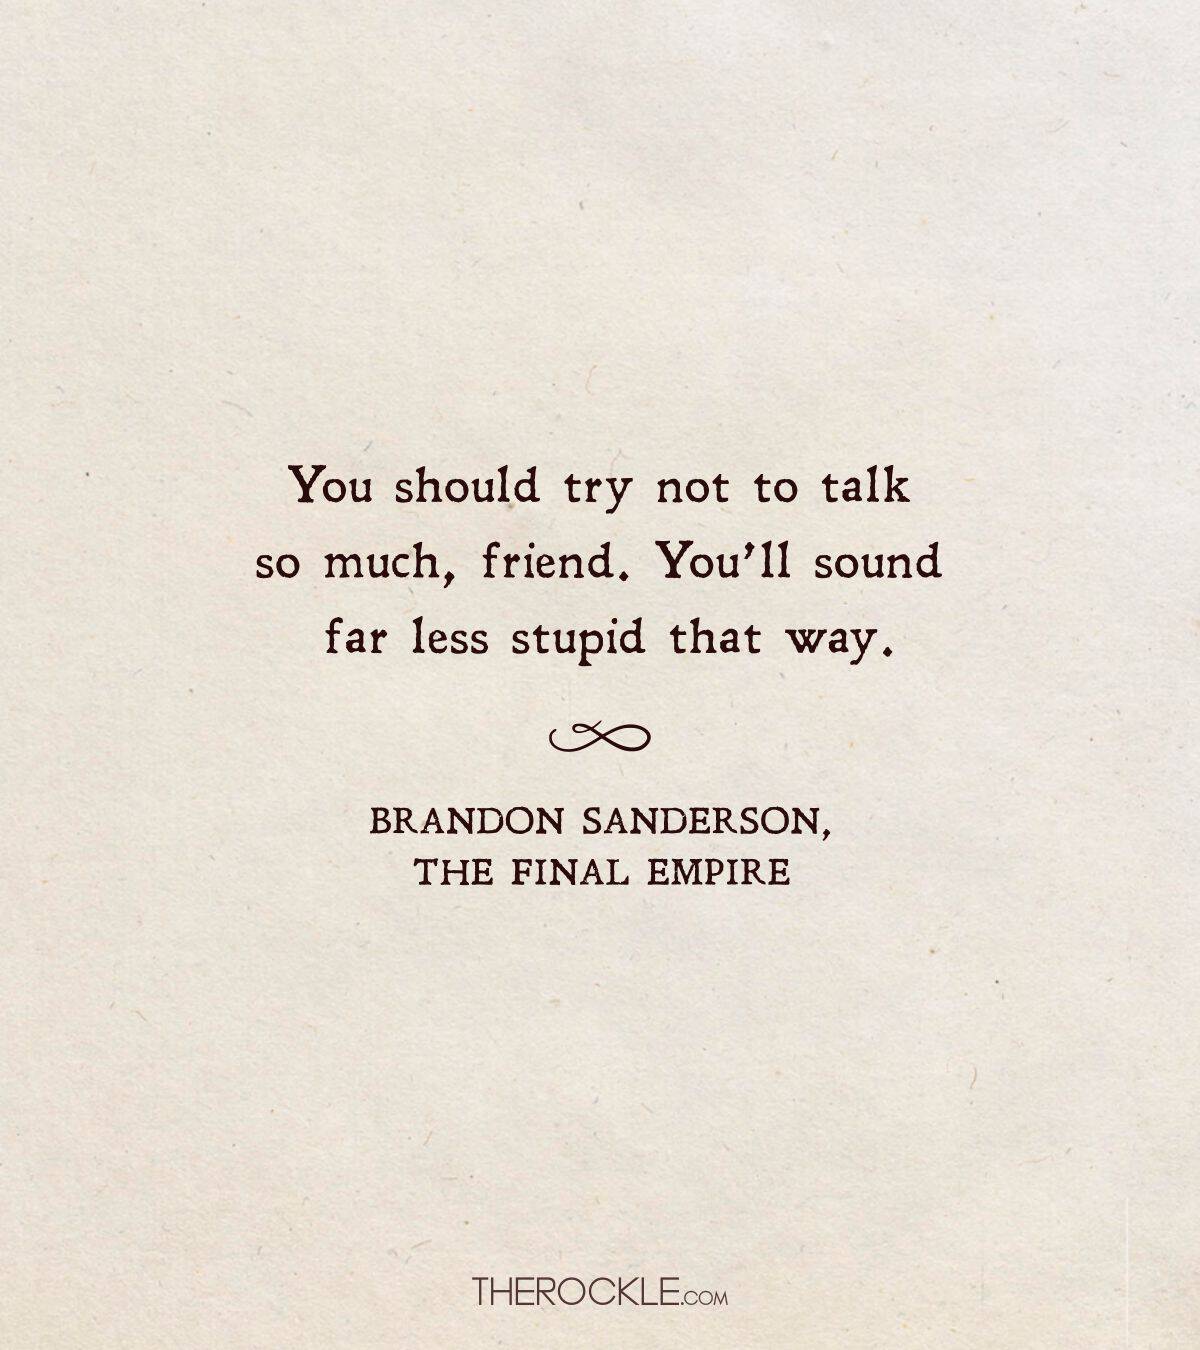 Funny Brandon Sanderson quote